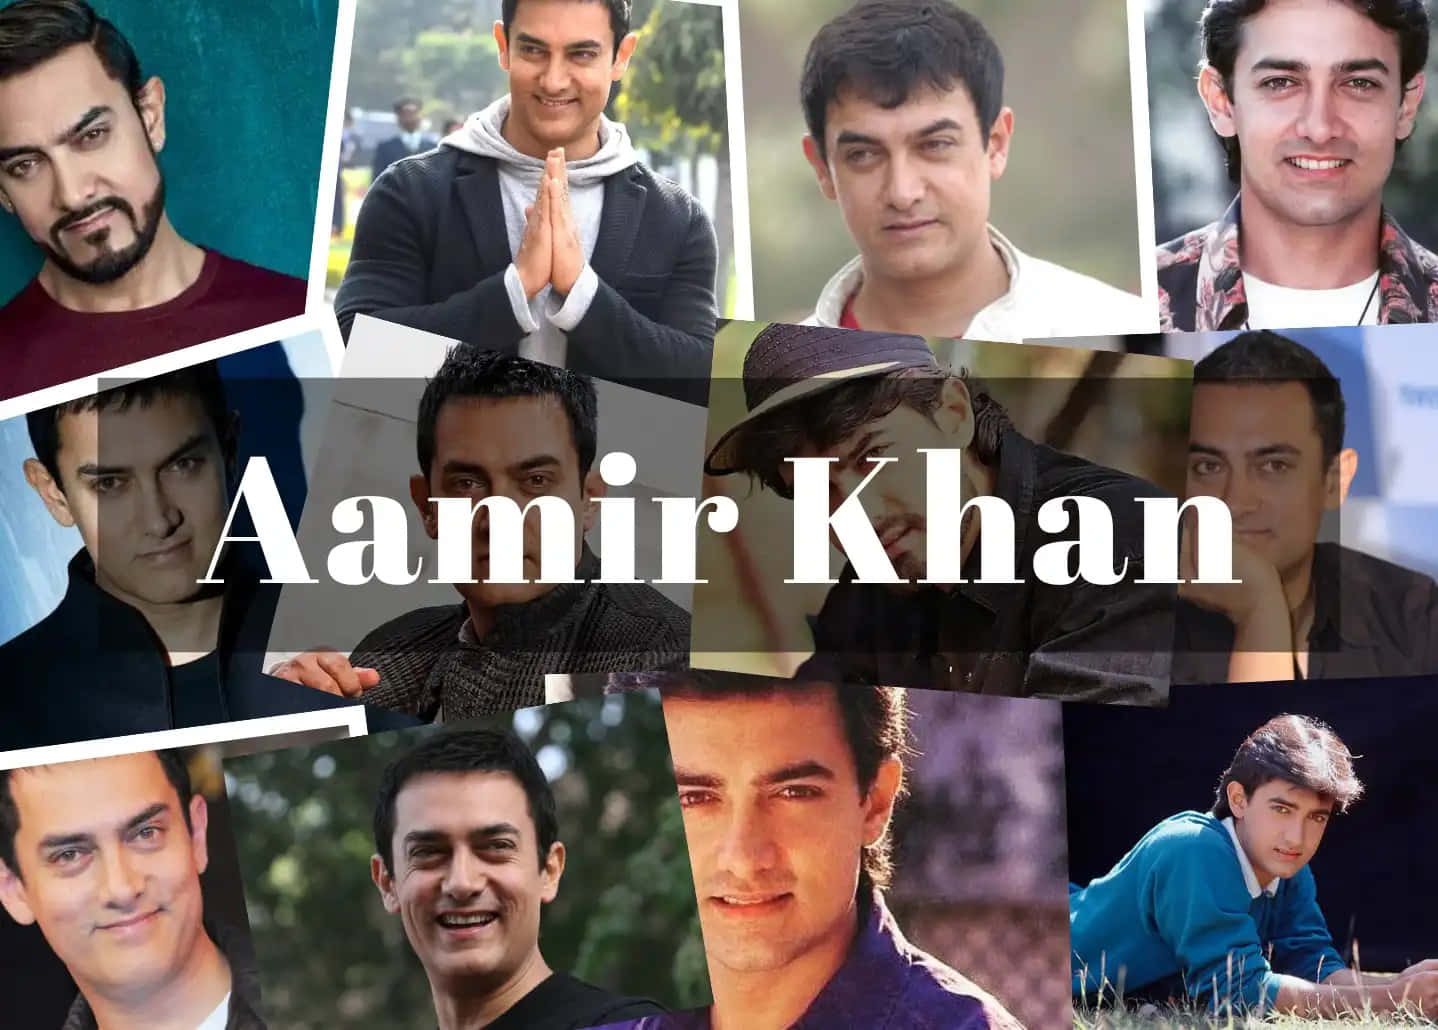 Aamirkhan, Ikonisk Bollywood-skuespiller Og Vinder Af Academy Award.